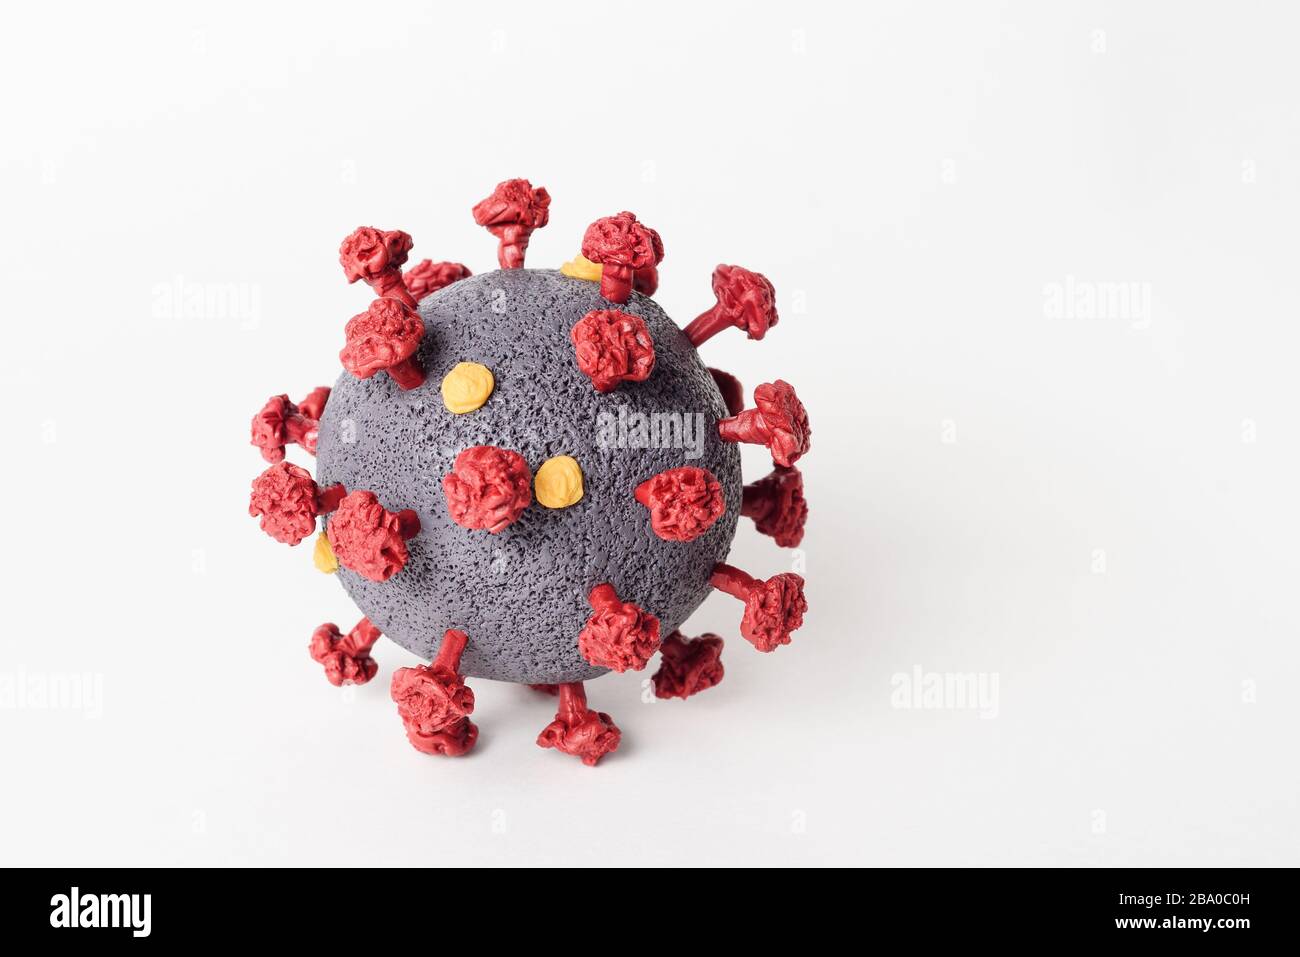 Coronavirus modèle SRAS-CoV-2 gros plan sur fond blanc. Virus dangereux des maladies infectieuses - COVID-19 Banque D'Images